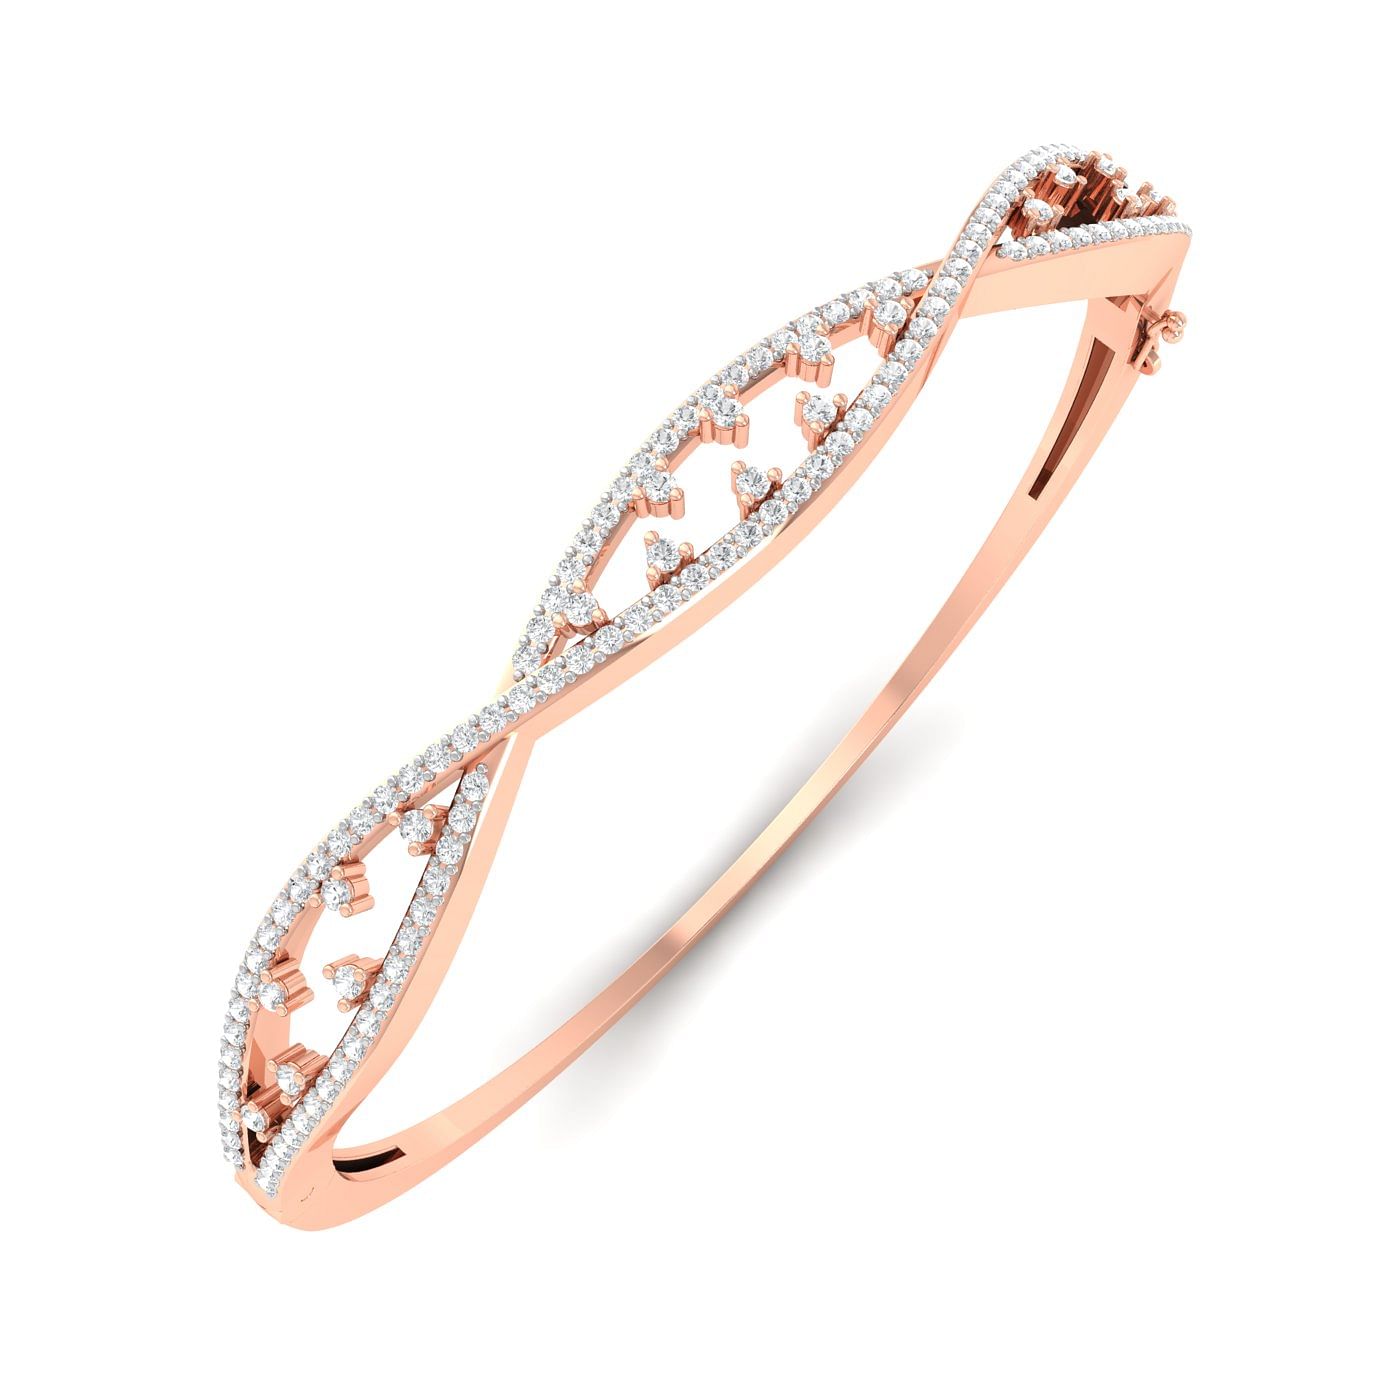 Rose gold Heidi Diamond Bracelet for engagement